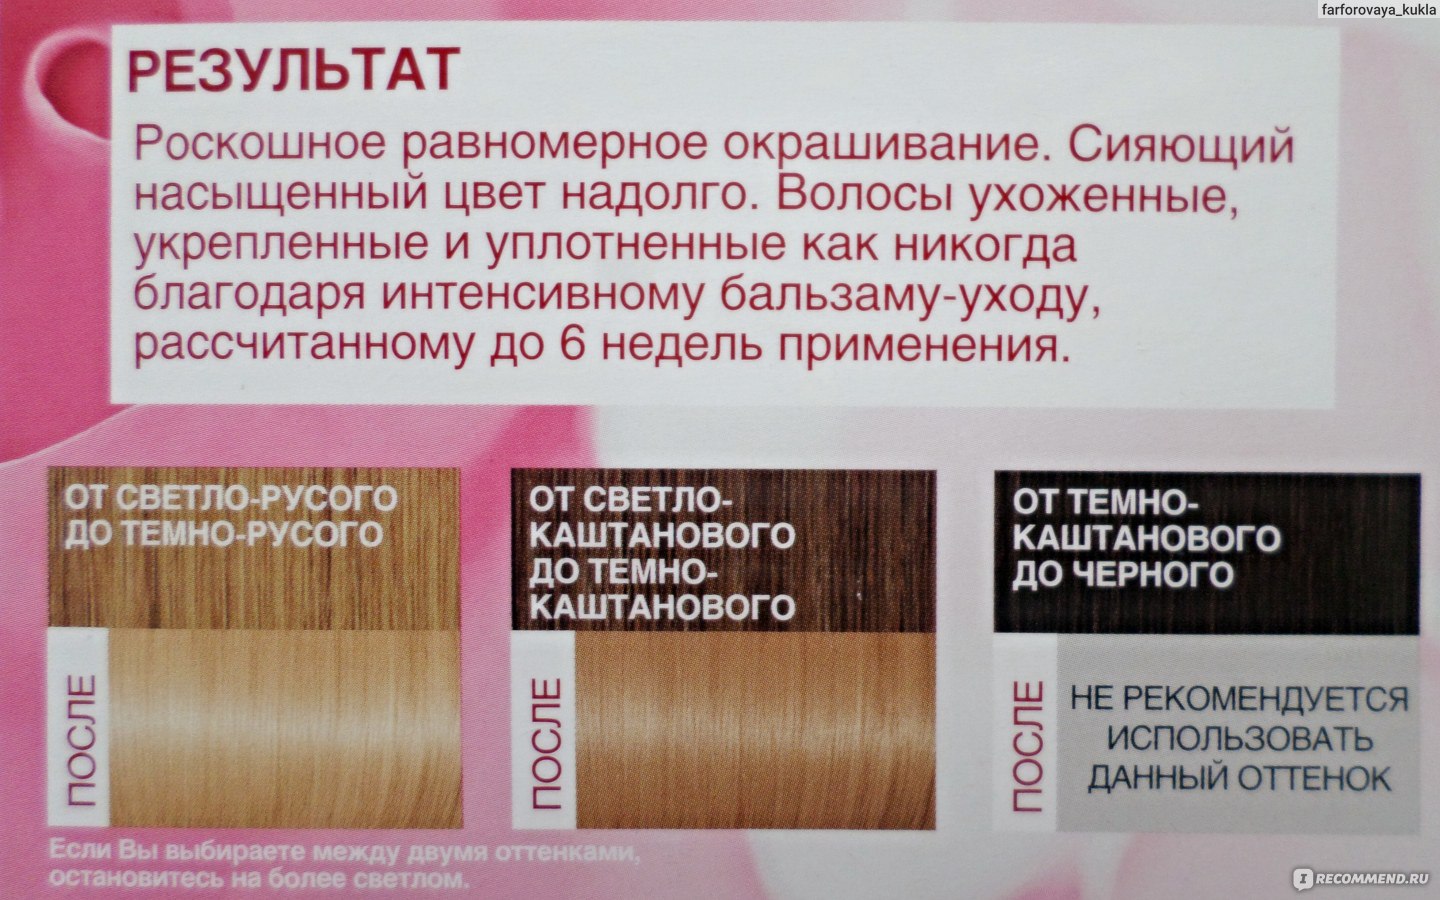 Как осветлить волосы в домашних условиях краской лореаль